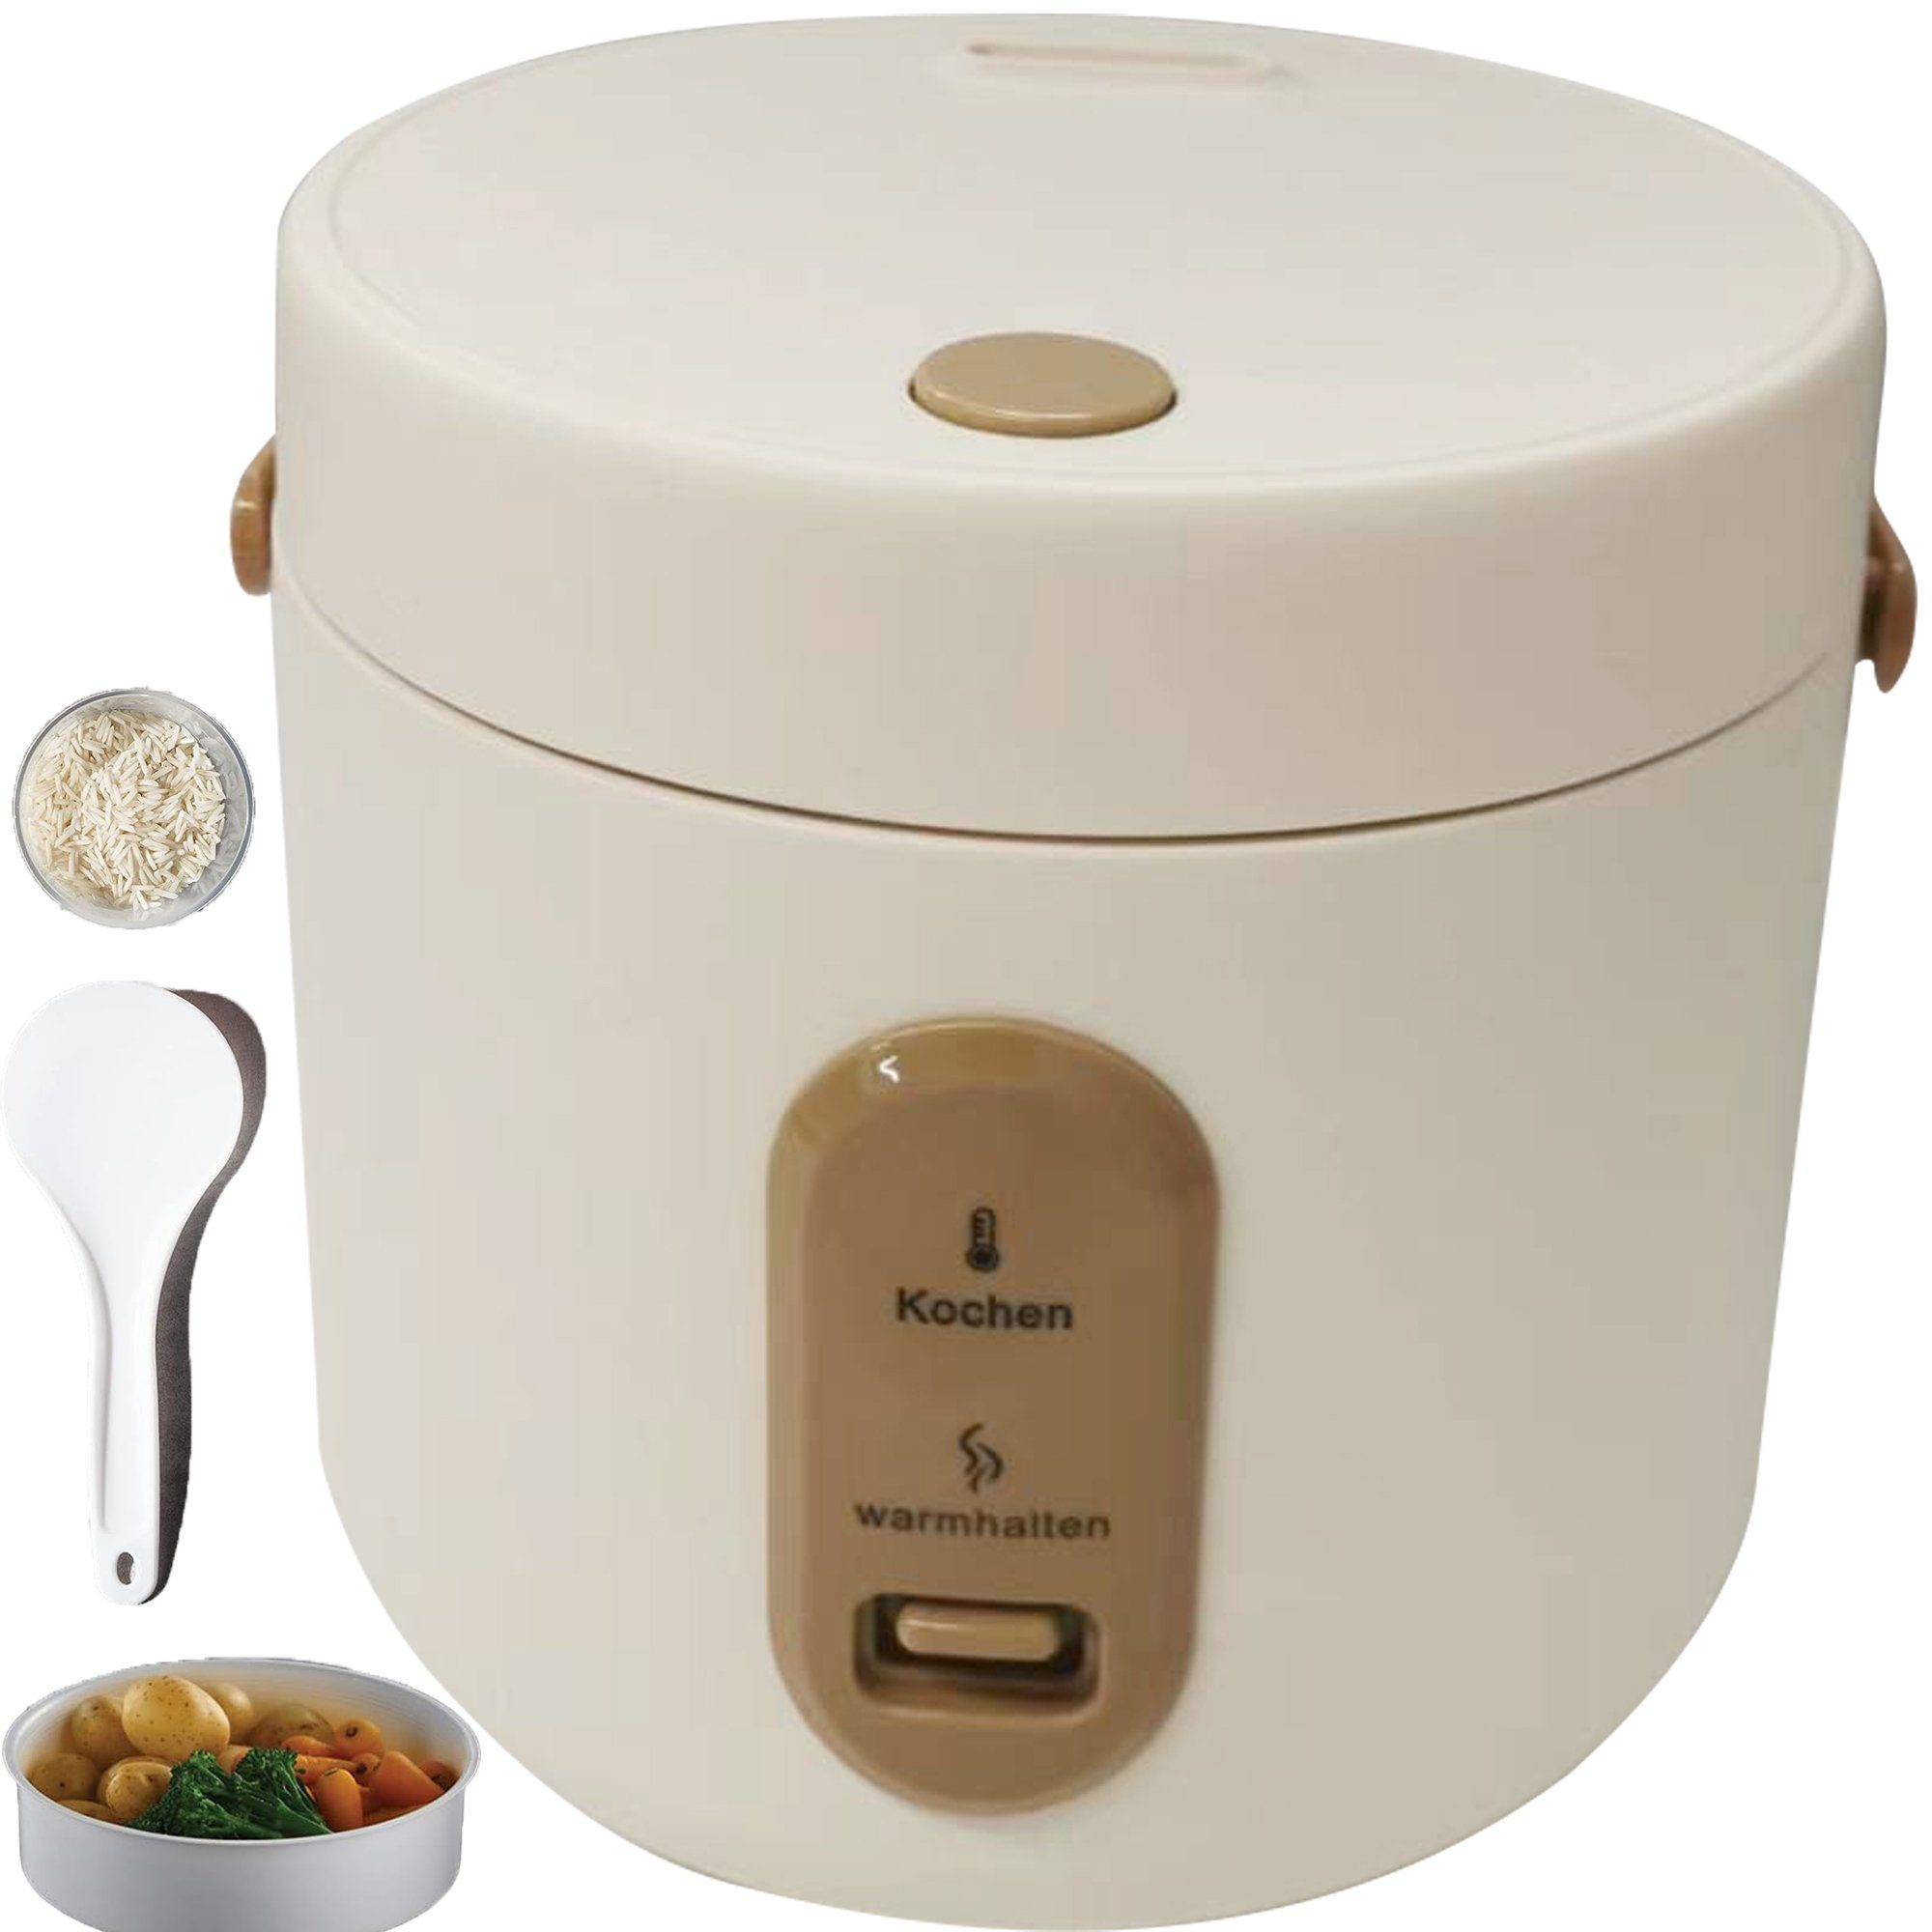 Mutoy Reiskocher 2L Reiskocher mit Dampfgarfunktion,Antihaft-Garen,One-Touch-Bedienung, Perfekt für 1-4 Personen zum Kochen von Reis,Fleisch,Nudeln oder Suppe